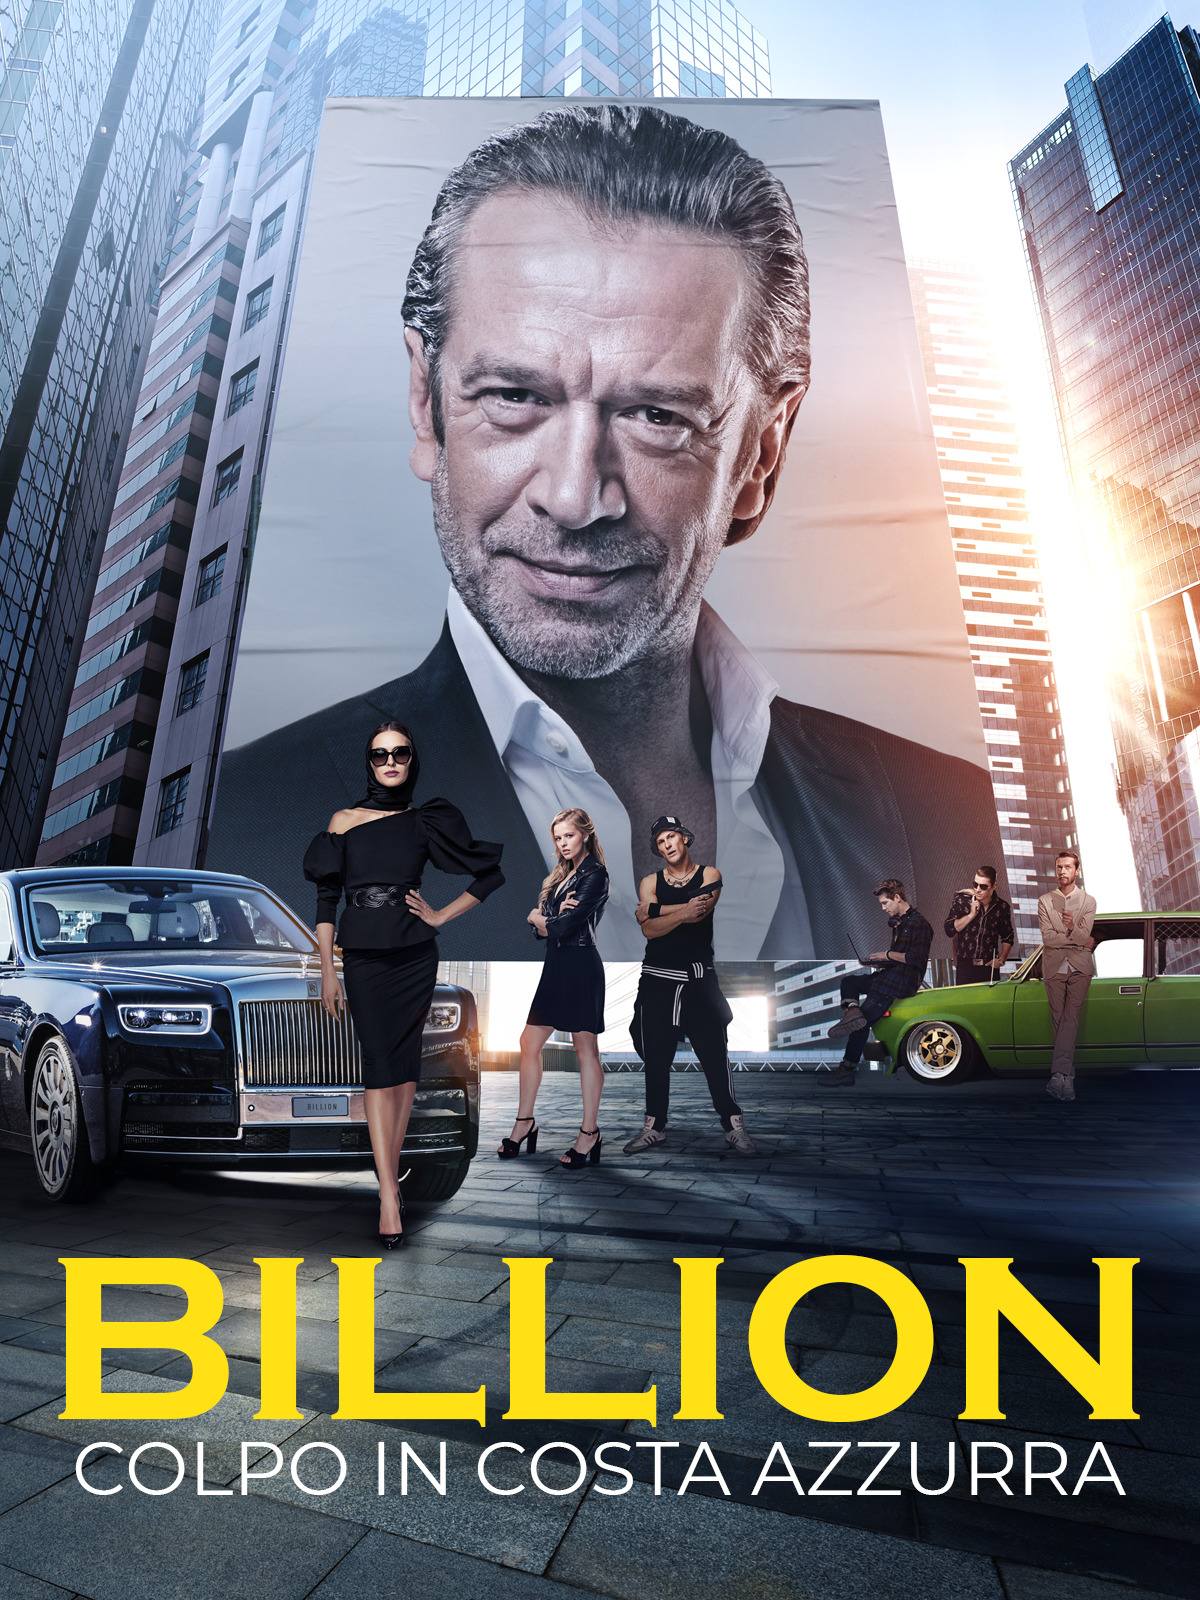 Billion – Colpo in Costa Azzurra [HD] (2019)